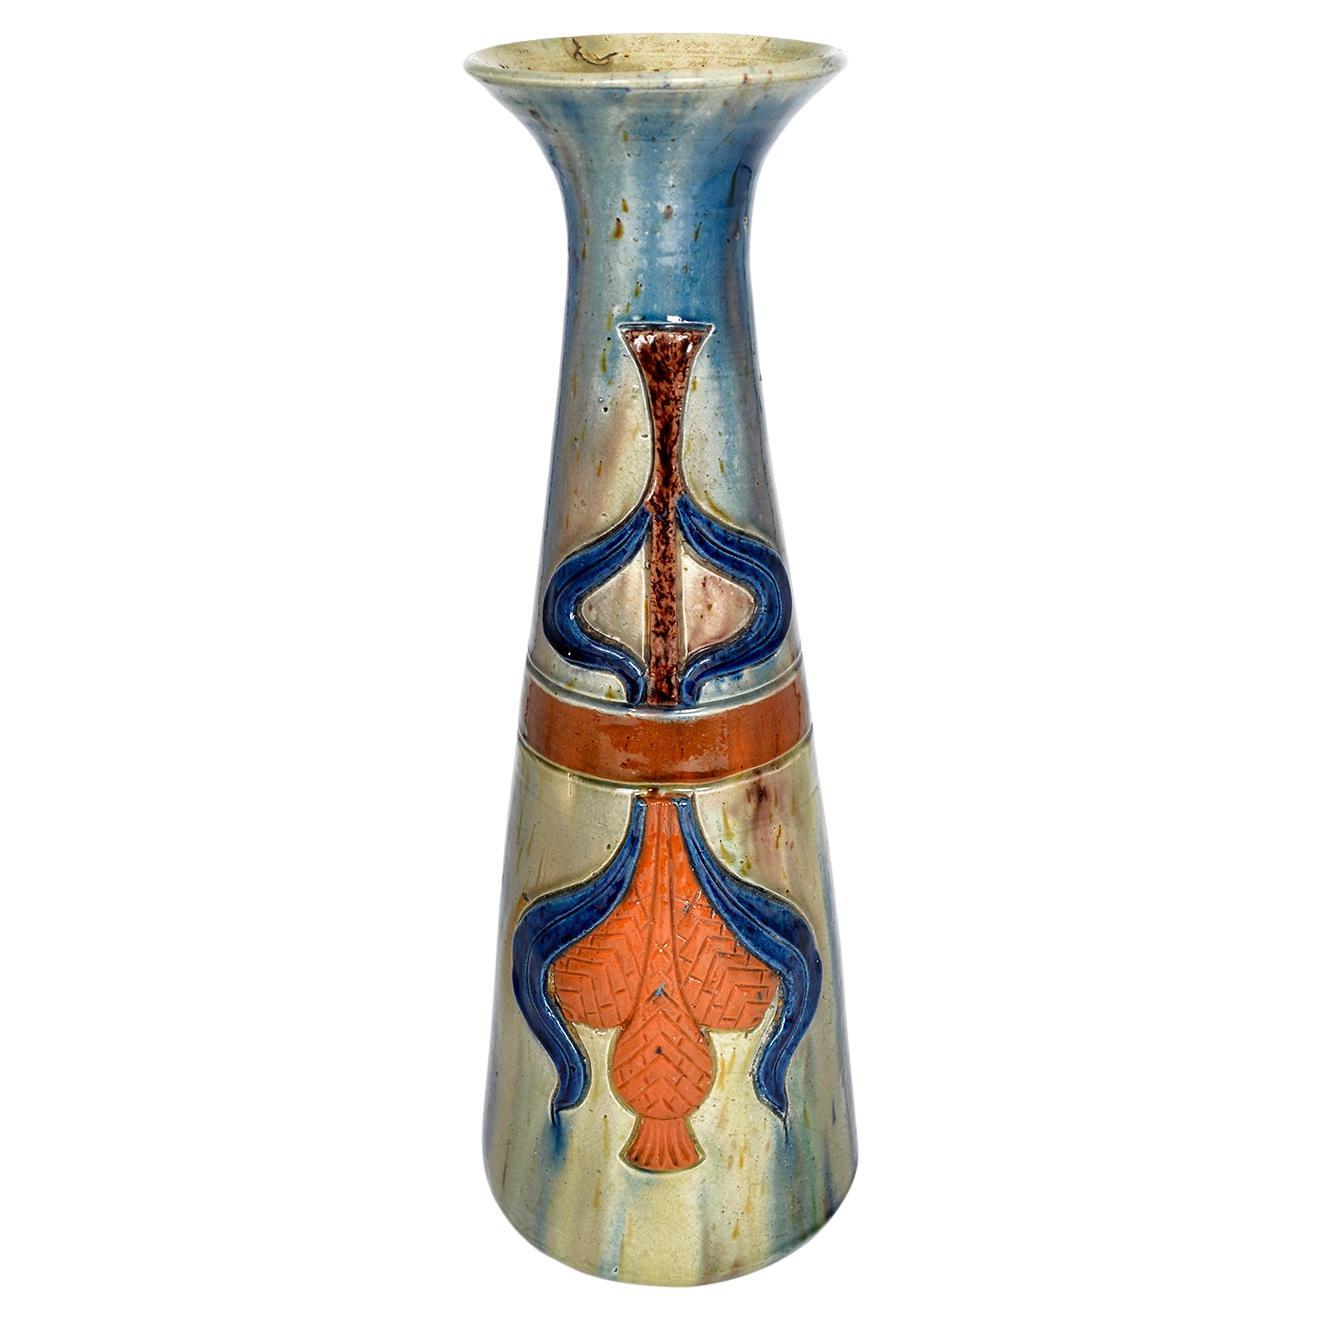 Flemish Studio Pottery Art Nouveau Drip Glazed Earthenware Vase 1900s Folk Art For Sale